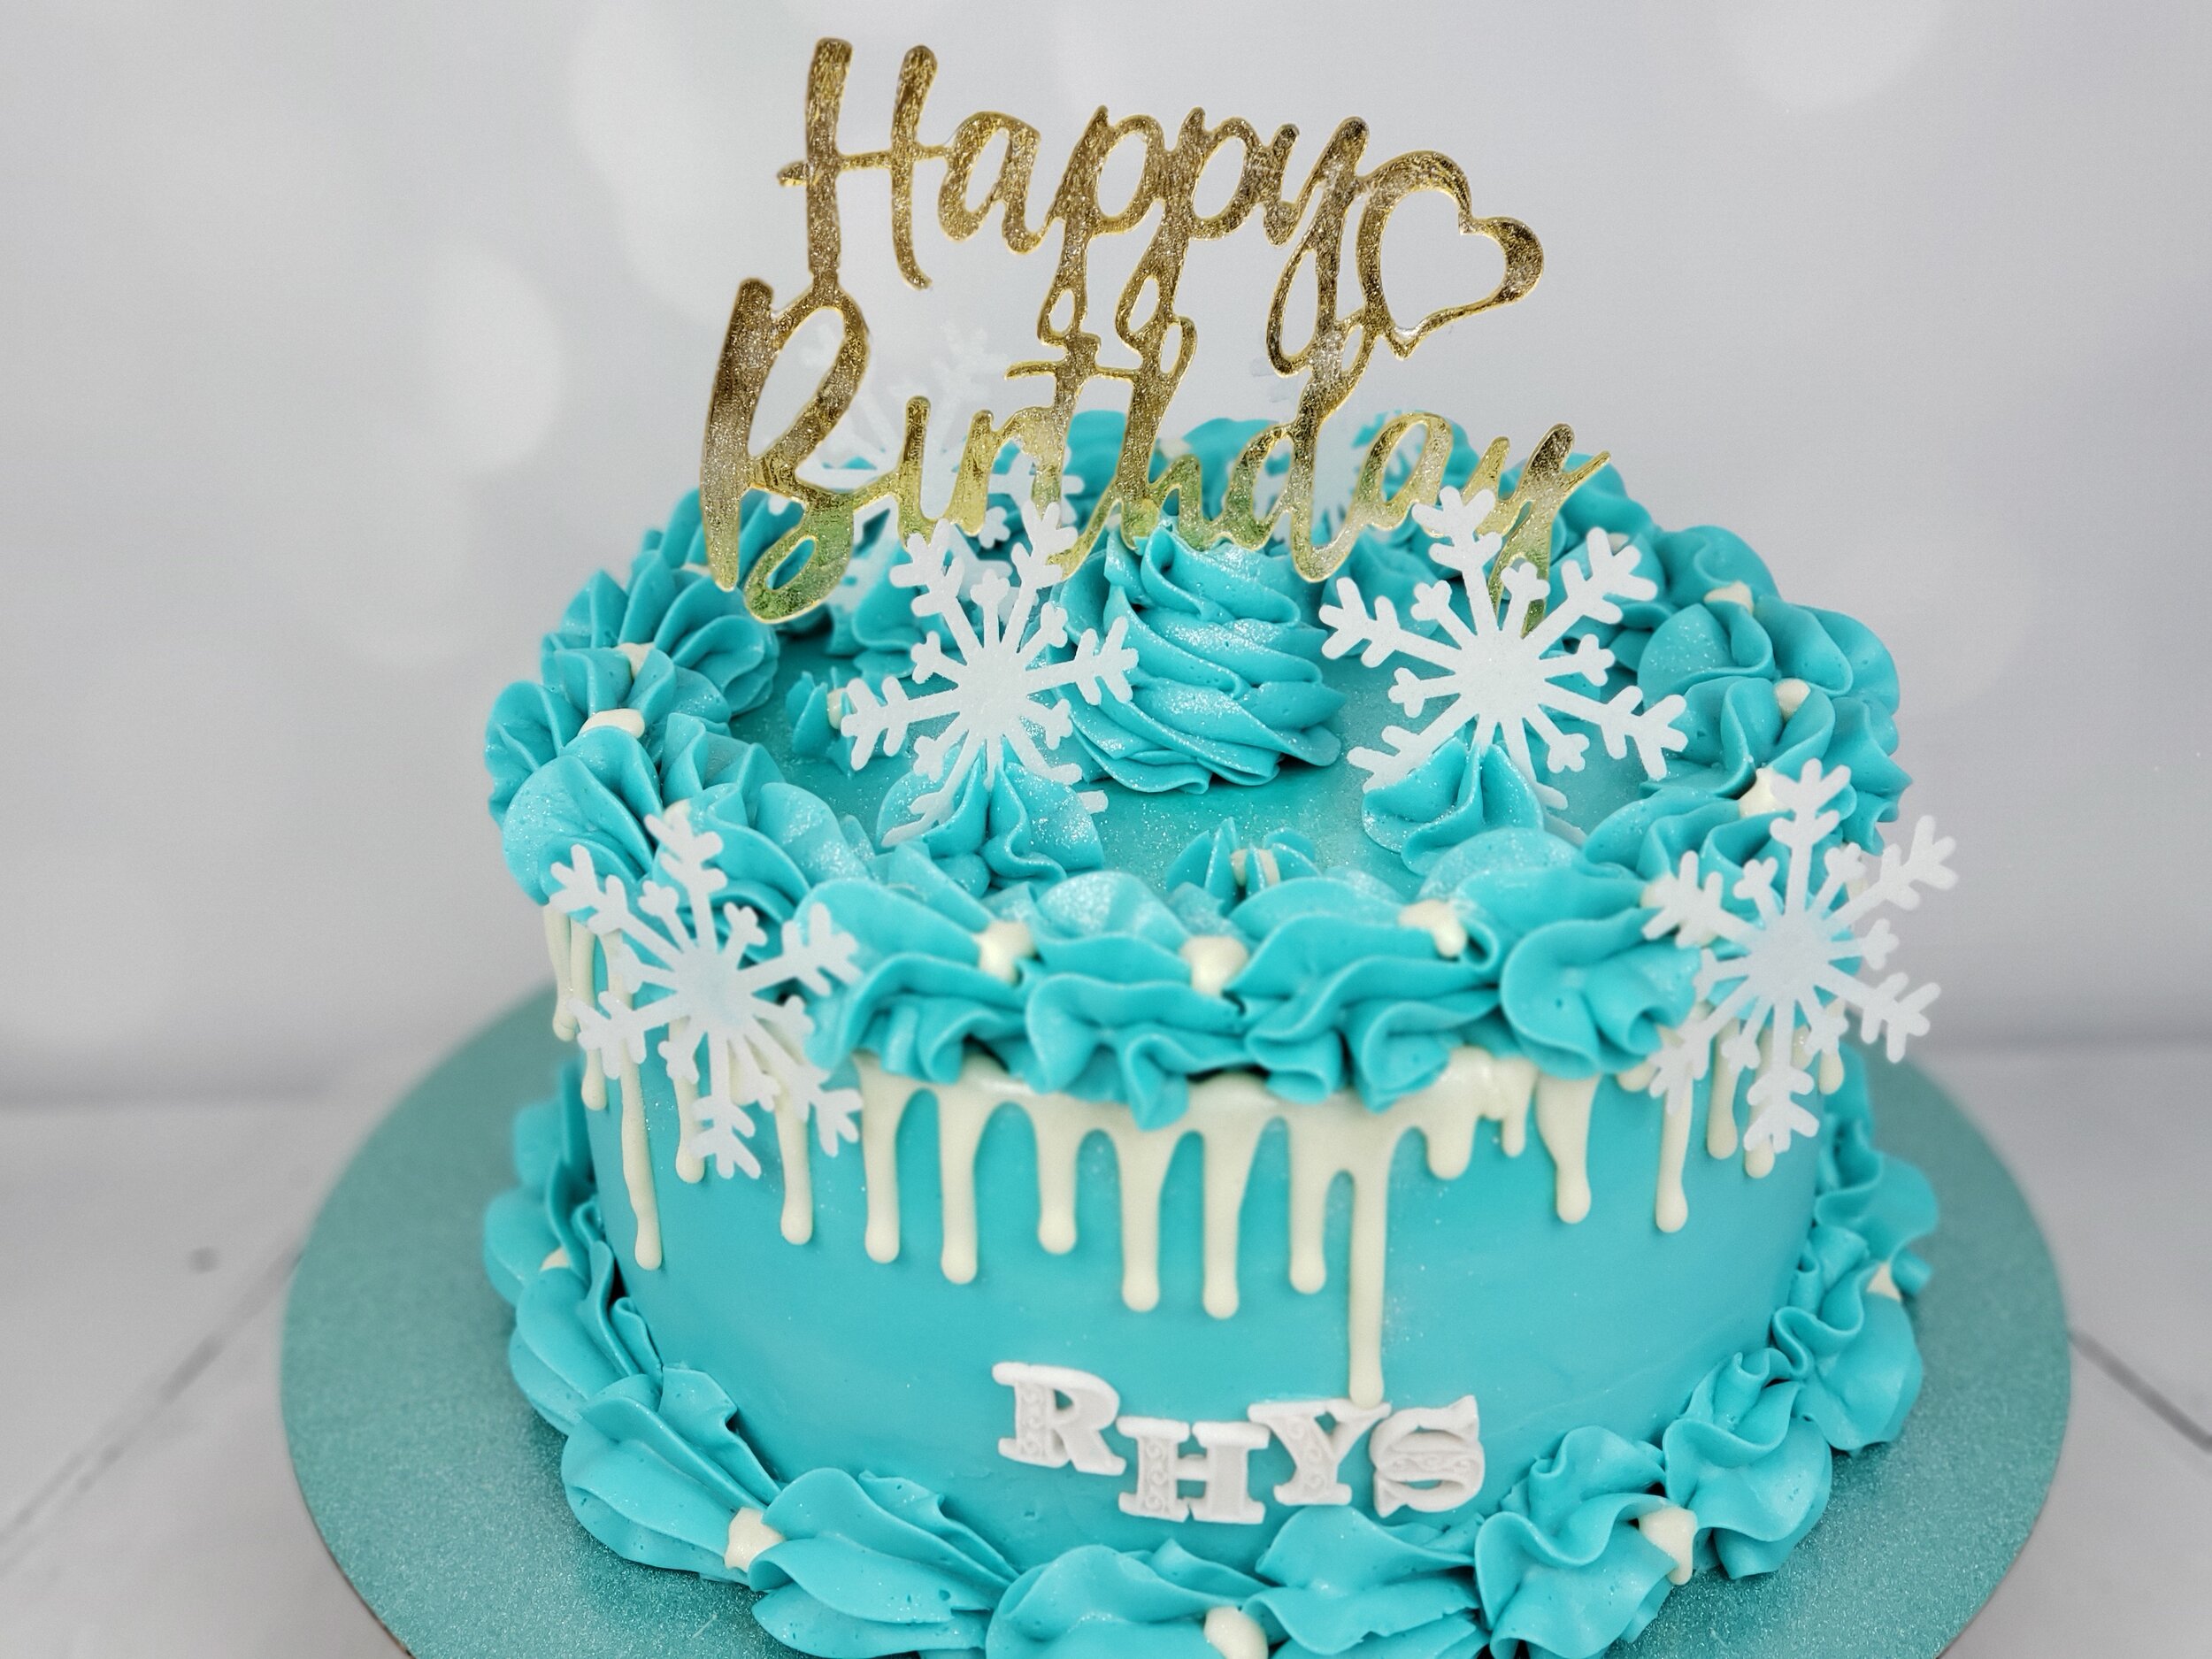 Chicago_Bakery-Cake-Blue-Winter.jpg